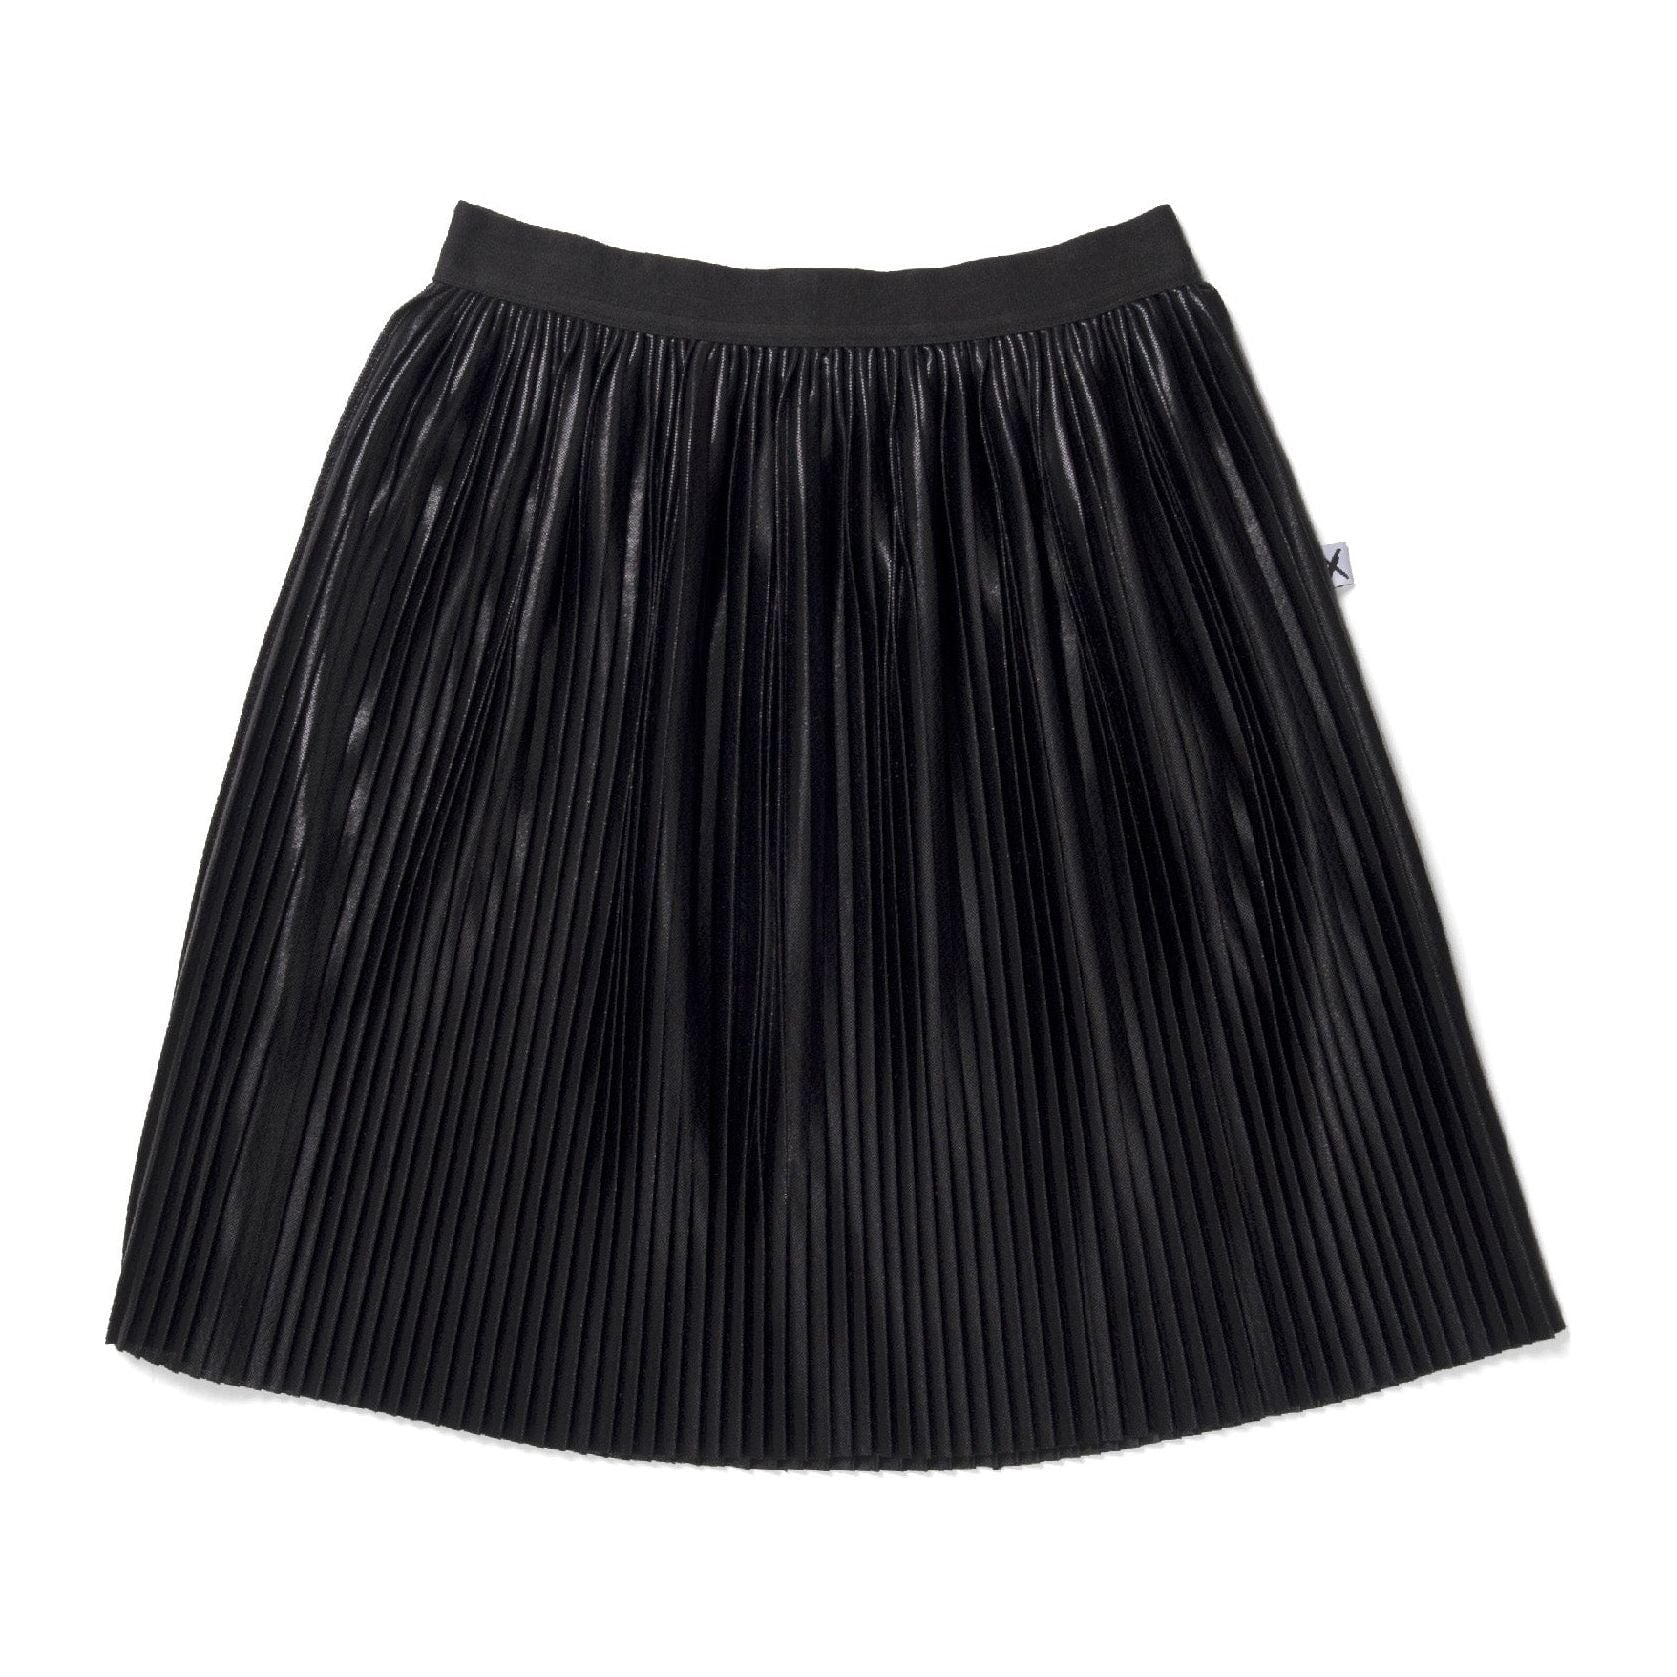 Luxe Skirt - Black